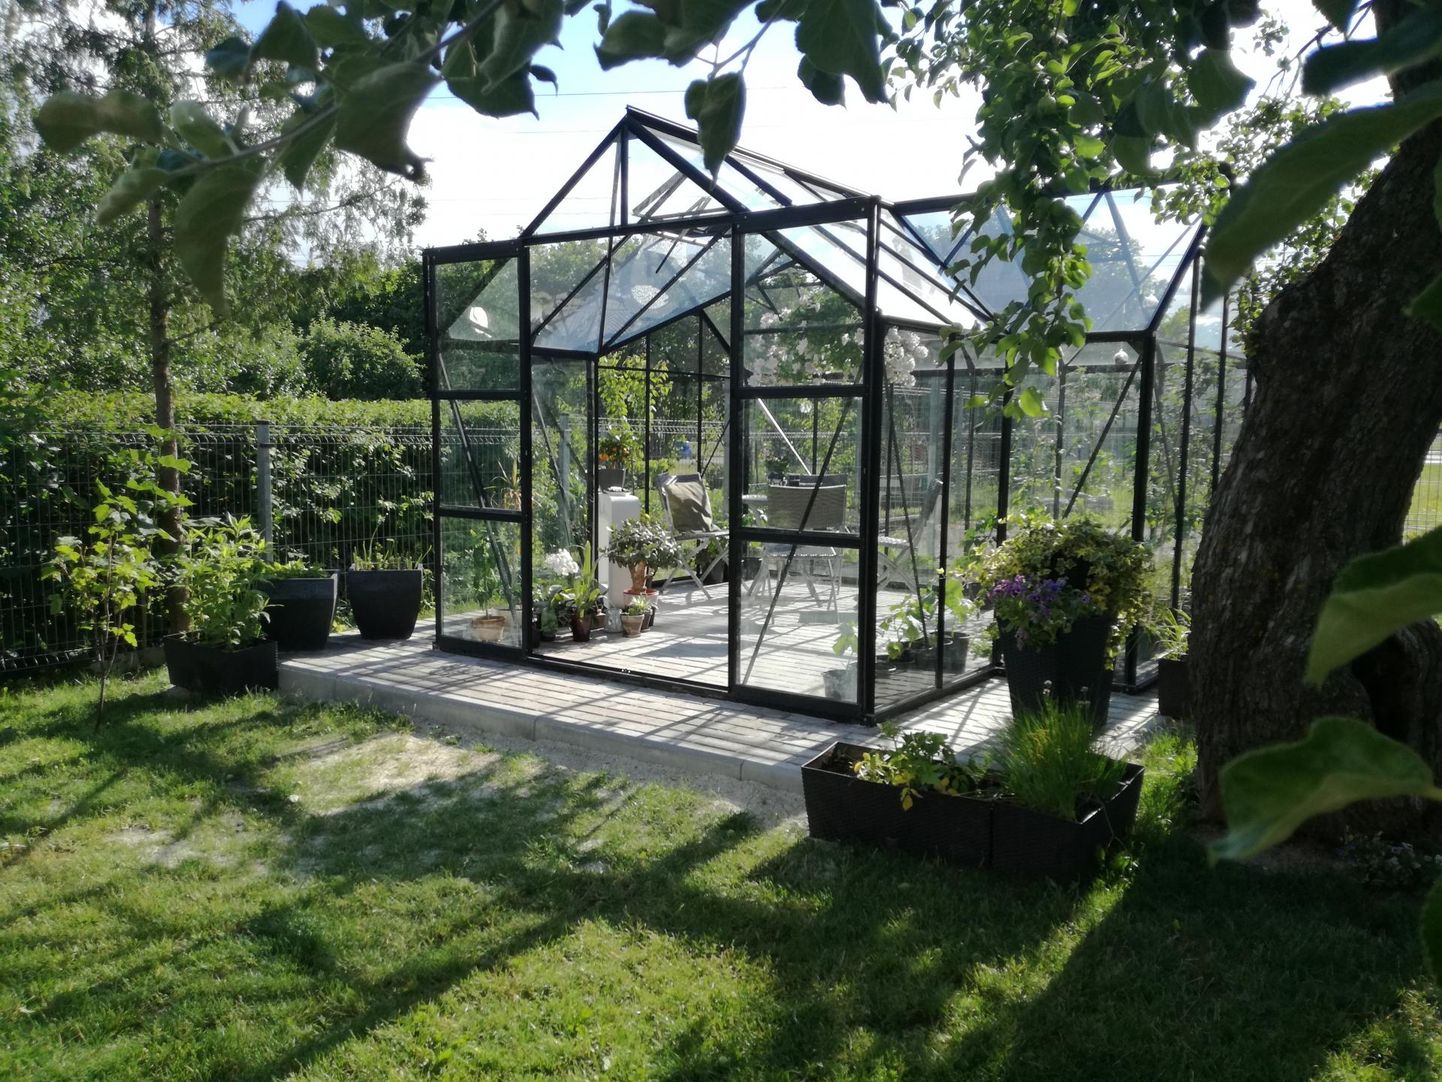 Aktiivselt on hakatud eelistama just klaasist aiapaviljone, kus avar väljavaade ja sees olles säilib tunne, nagu viibiksid õues.